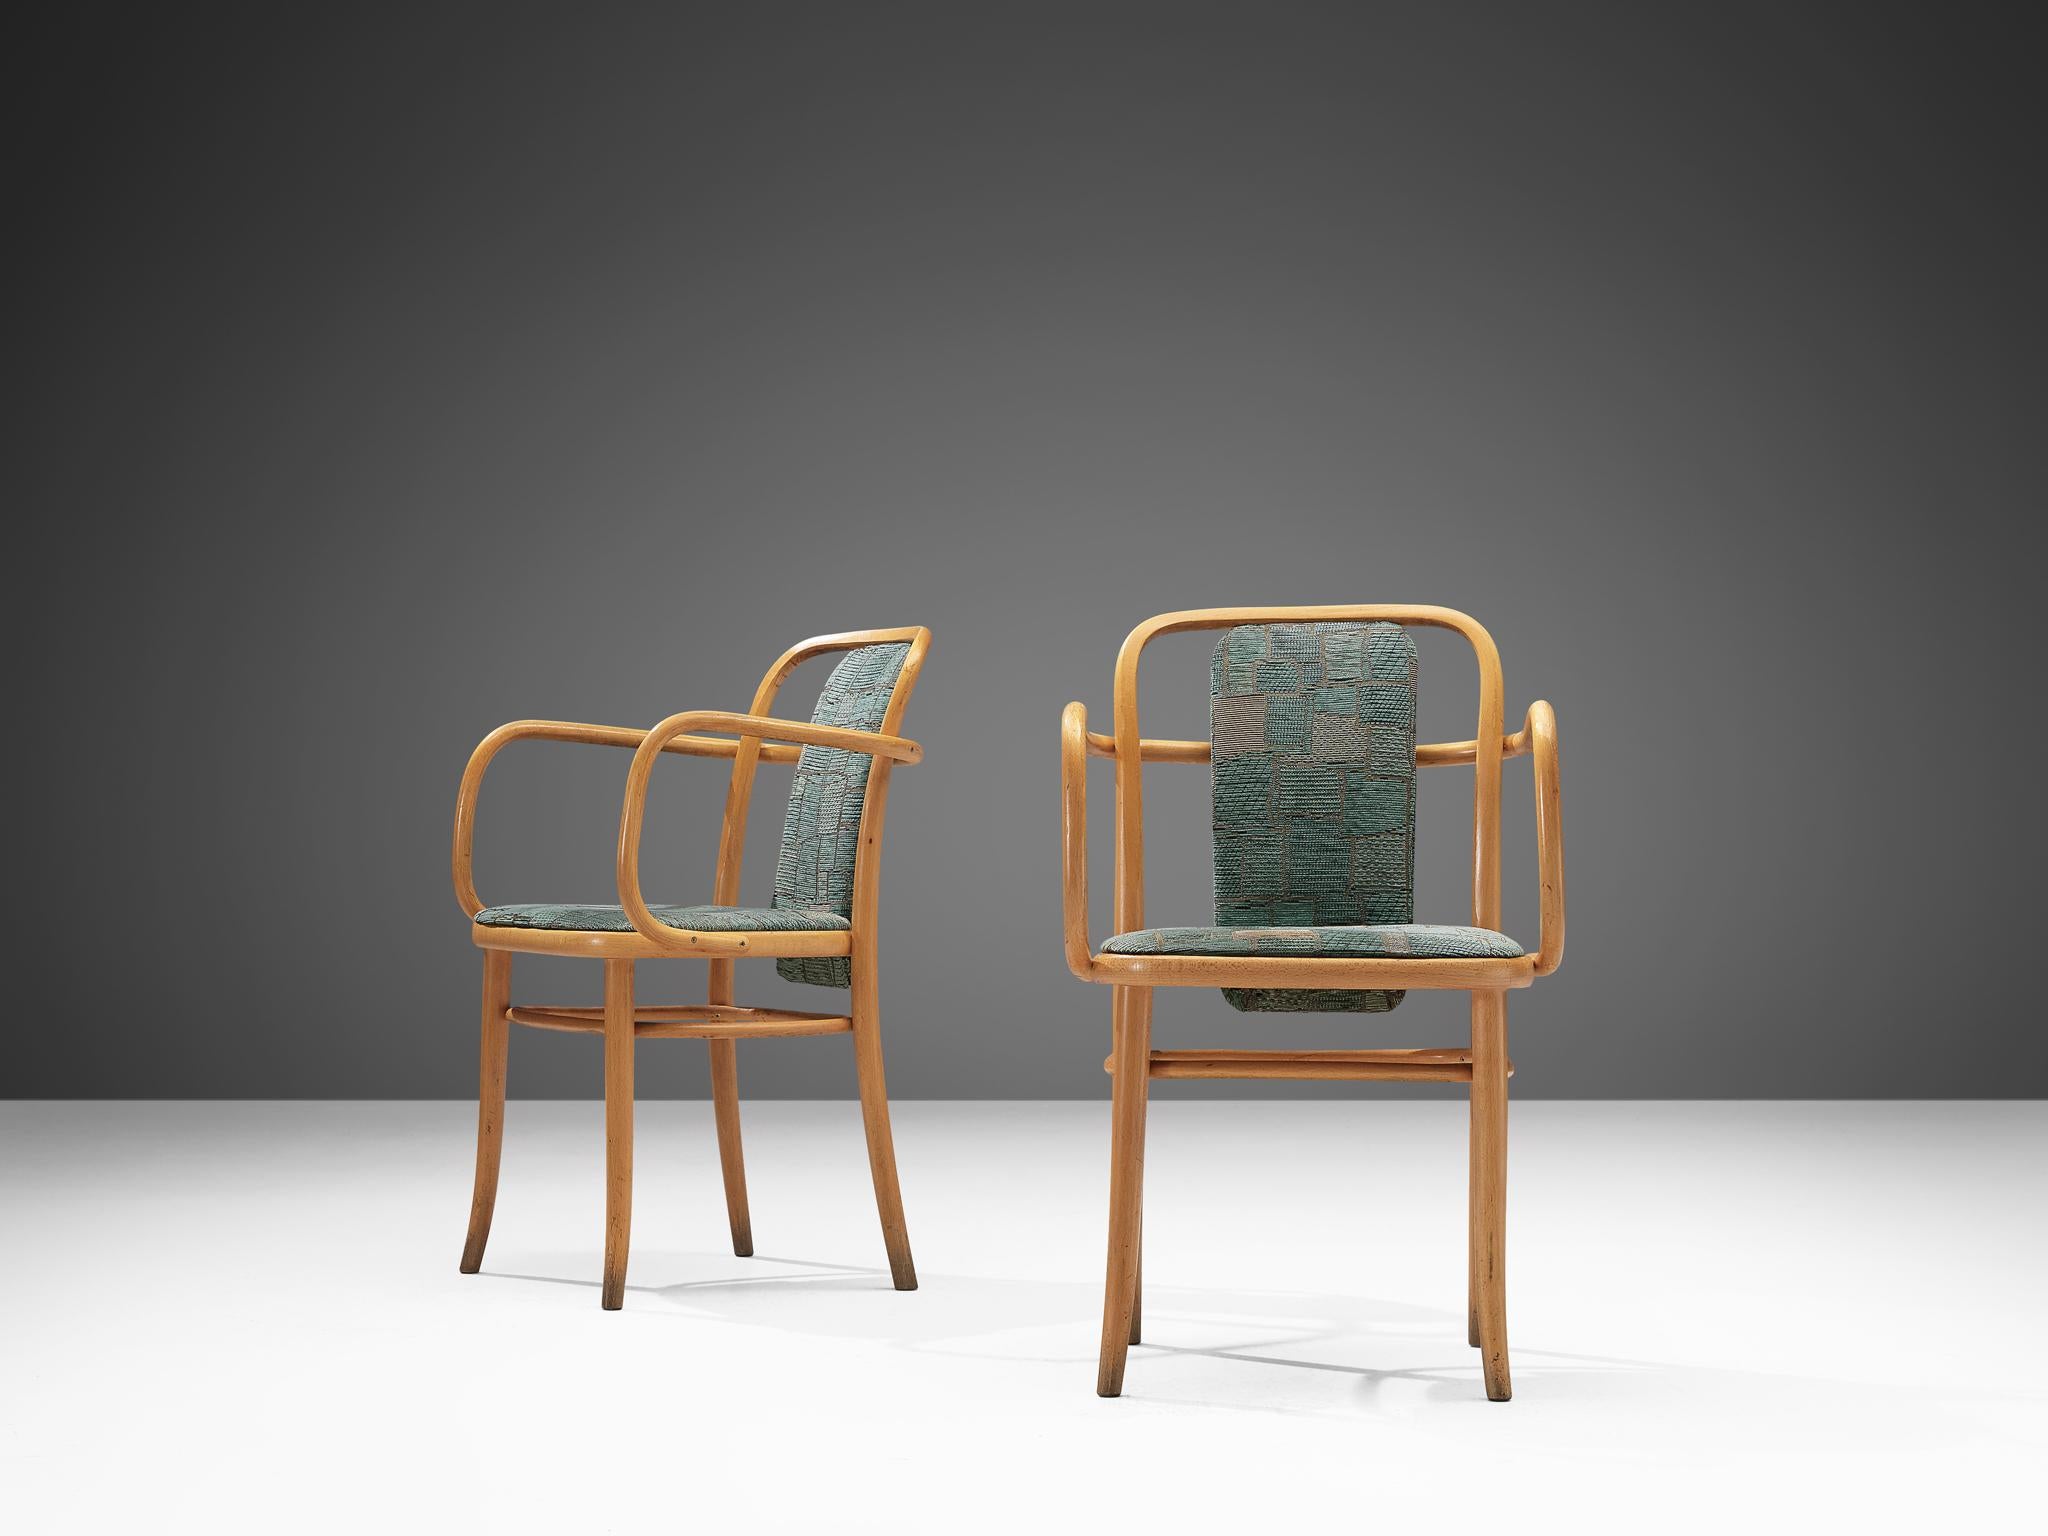 Chaises de salle à manger en bois courbé et tapisserie d'aigue-marine texturée, Europe, années 1960.
 
Paire d'élégants fauteuils en bois courbé. Les accoudoirs en bois courbé présentent des lignes sinueuses qui se fondent dans les dossiers ouverts.